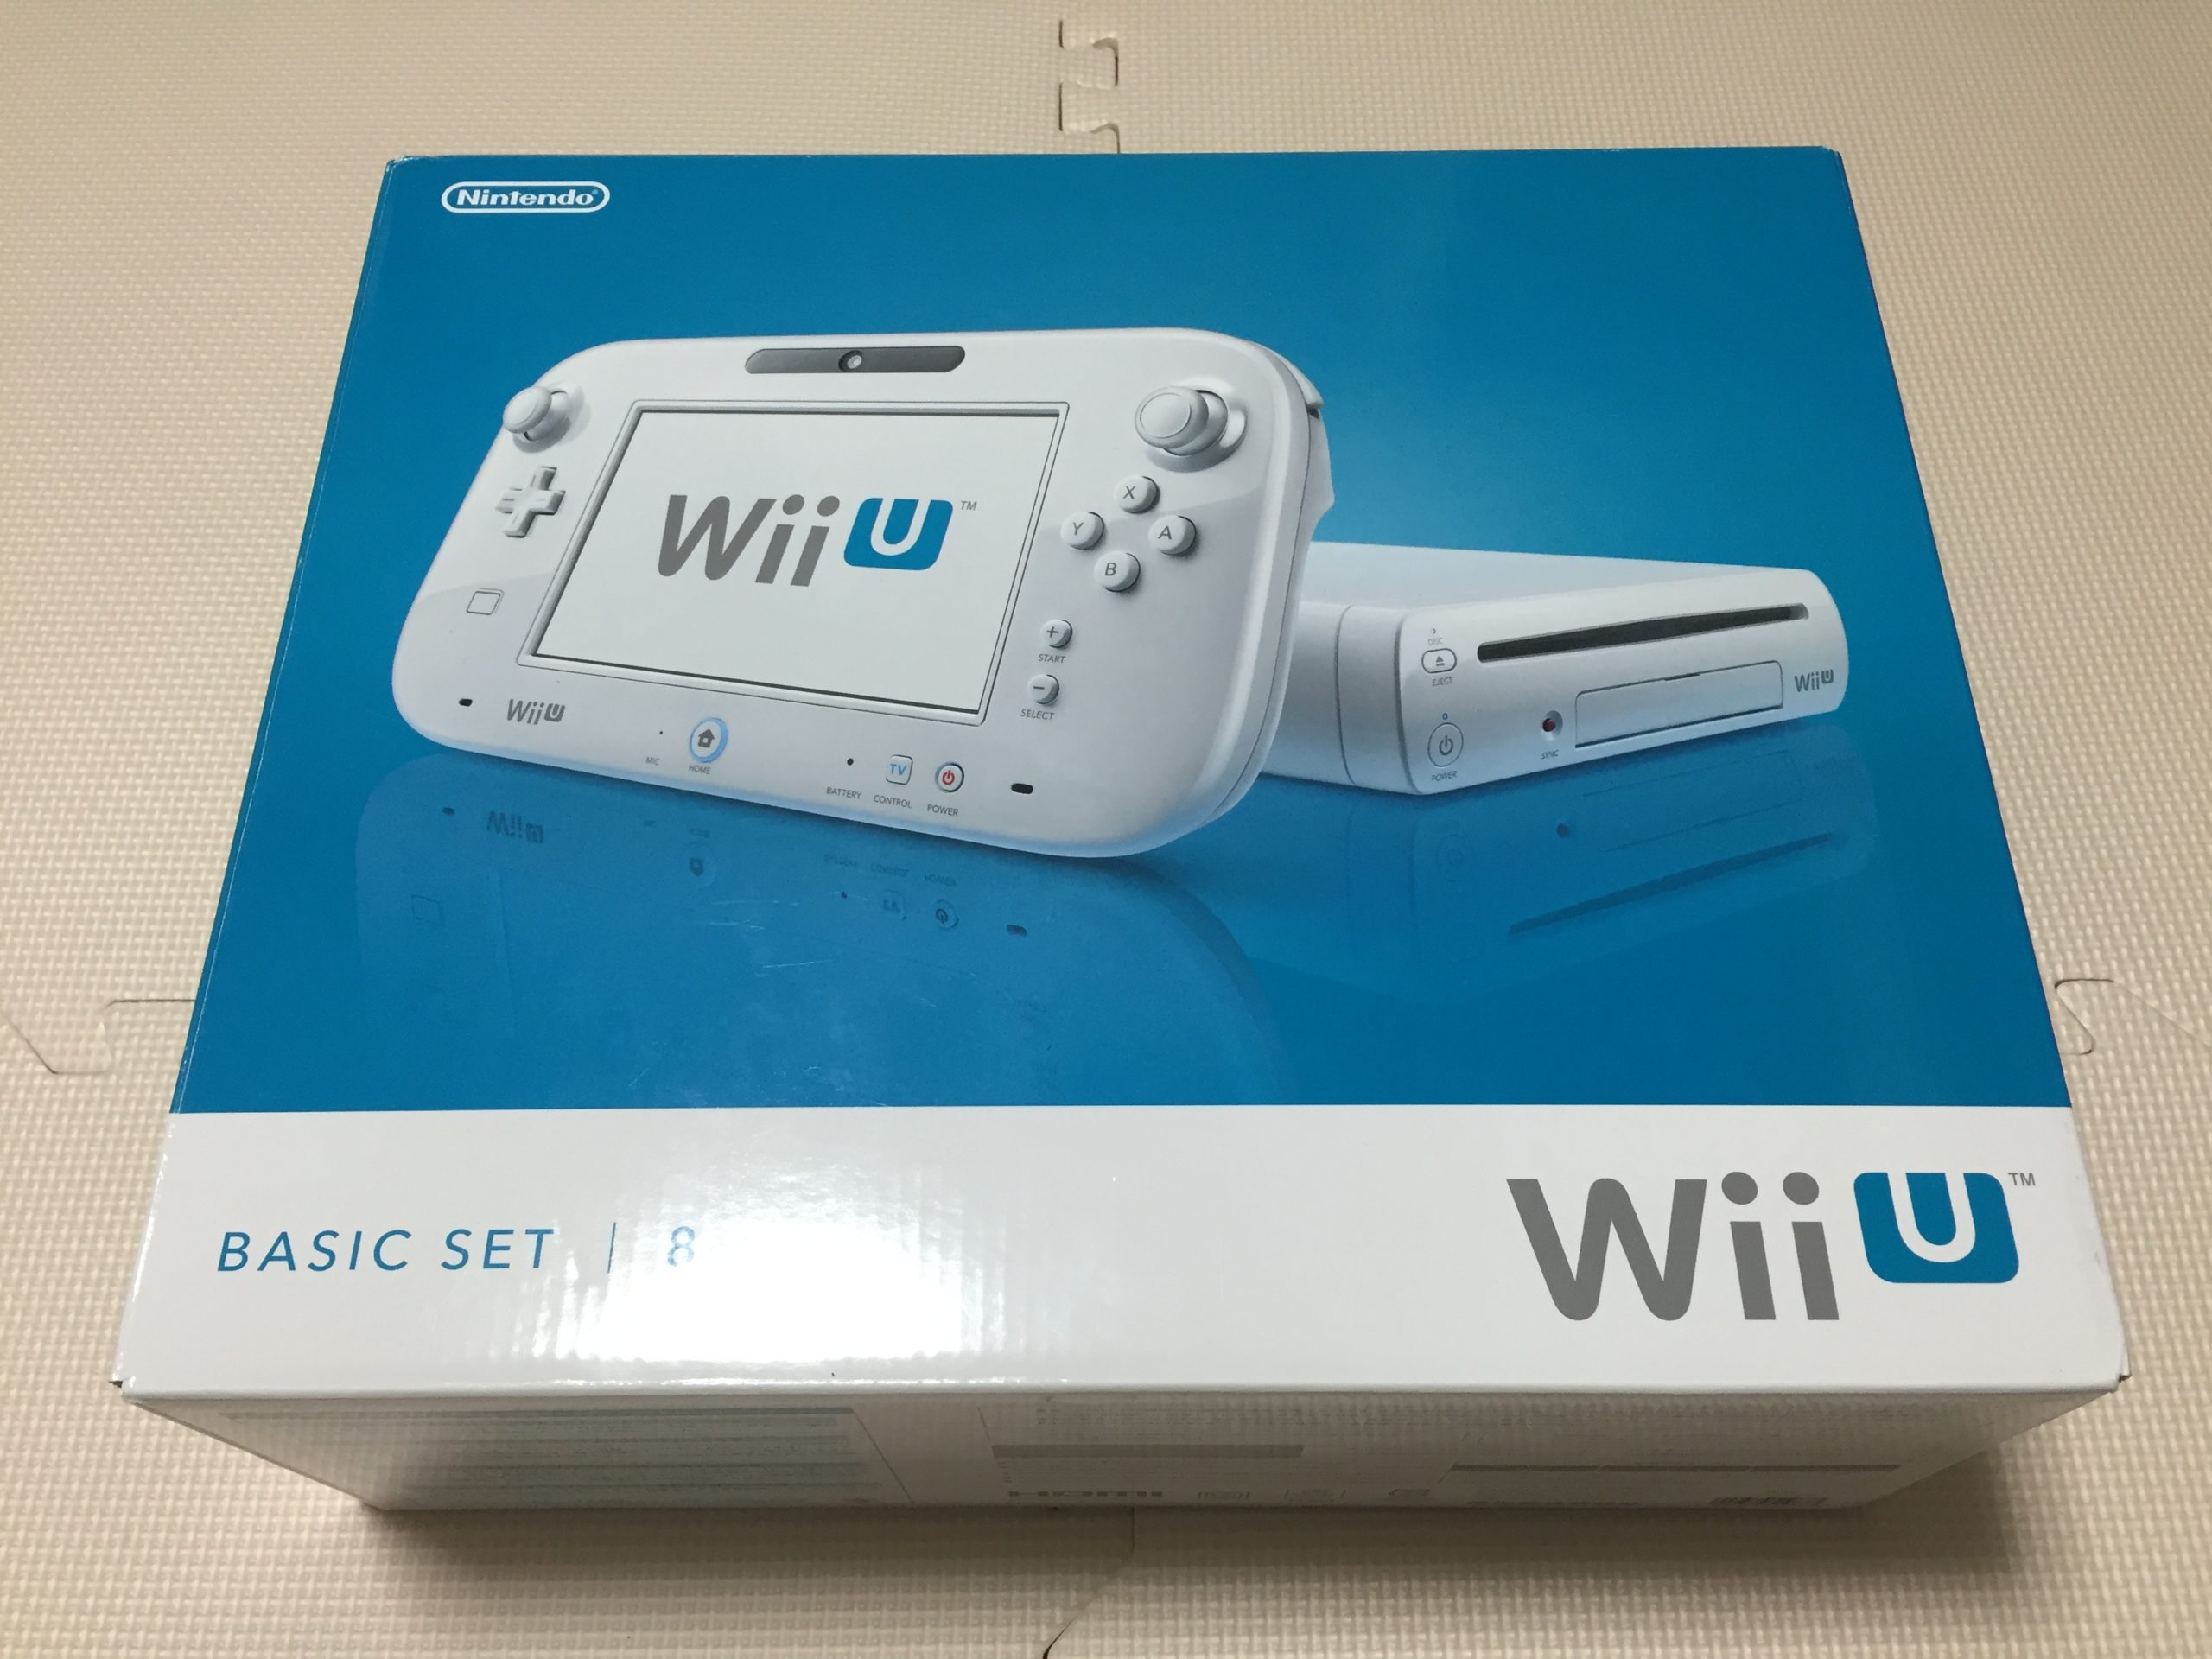 良いオンライン販売 Wii U本体・ソフト10本・周辺機器 家庭用ゲーム本体